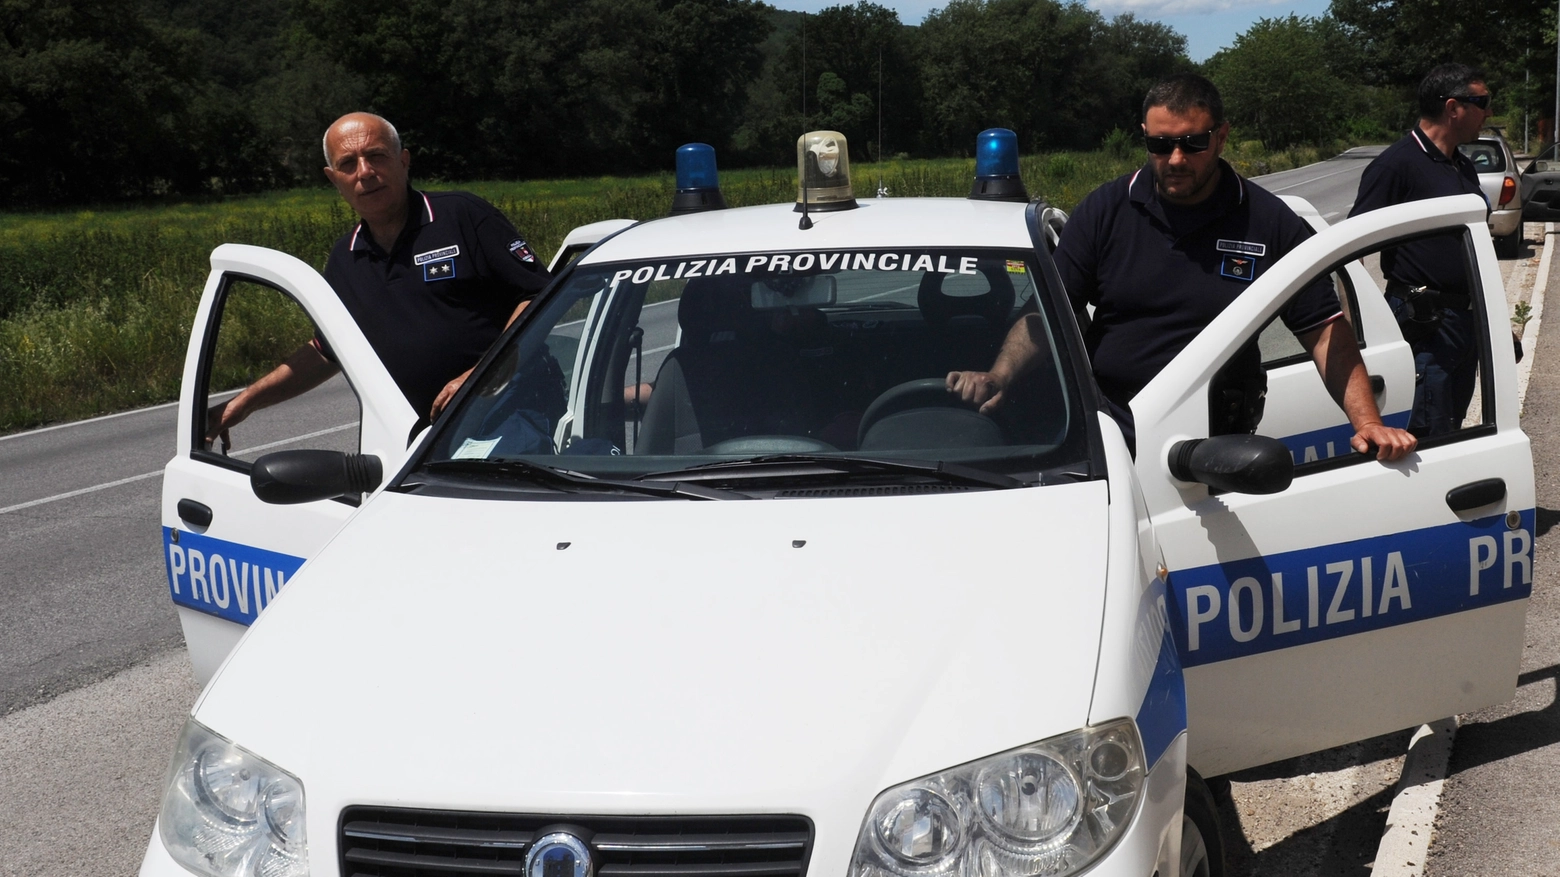 Polizia provinciale (Foto di repertorio Crocchioni)